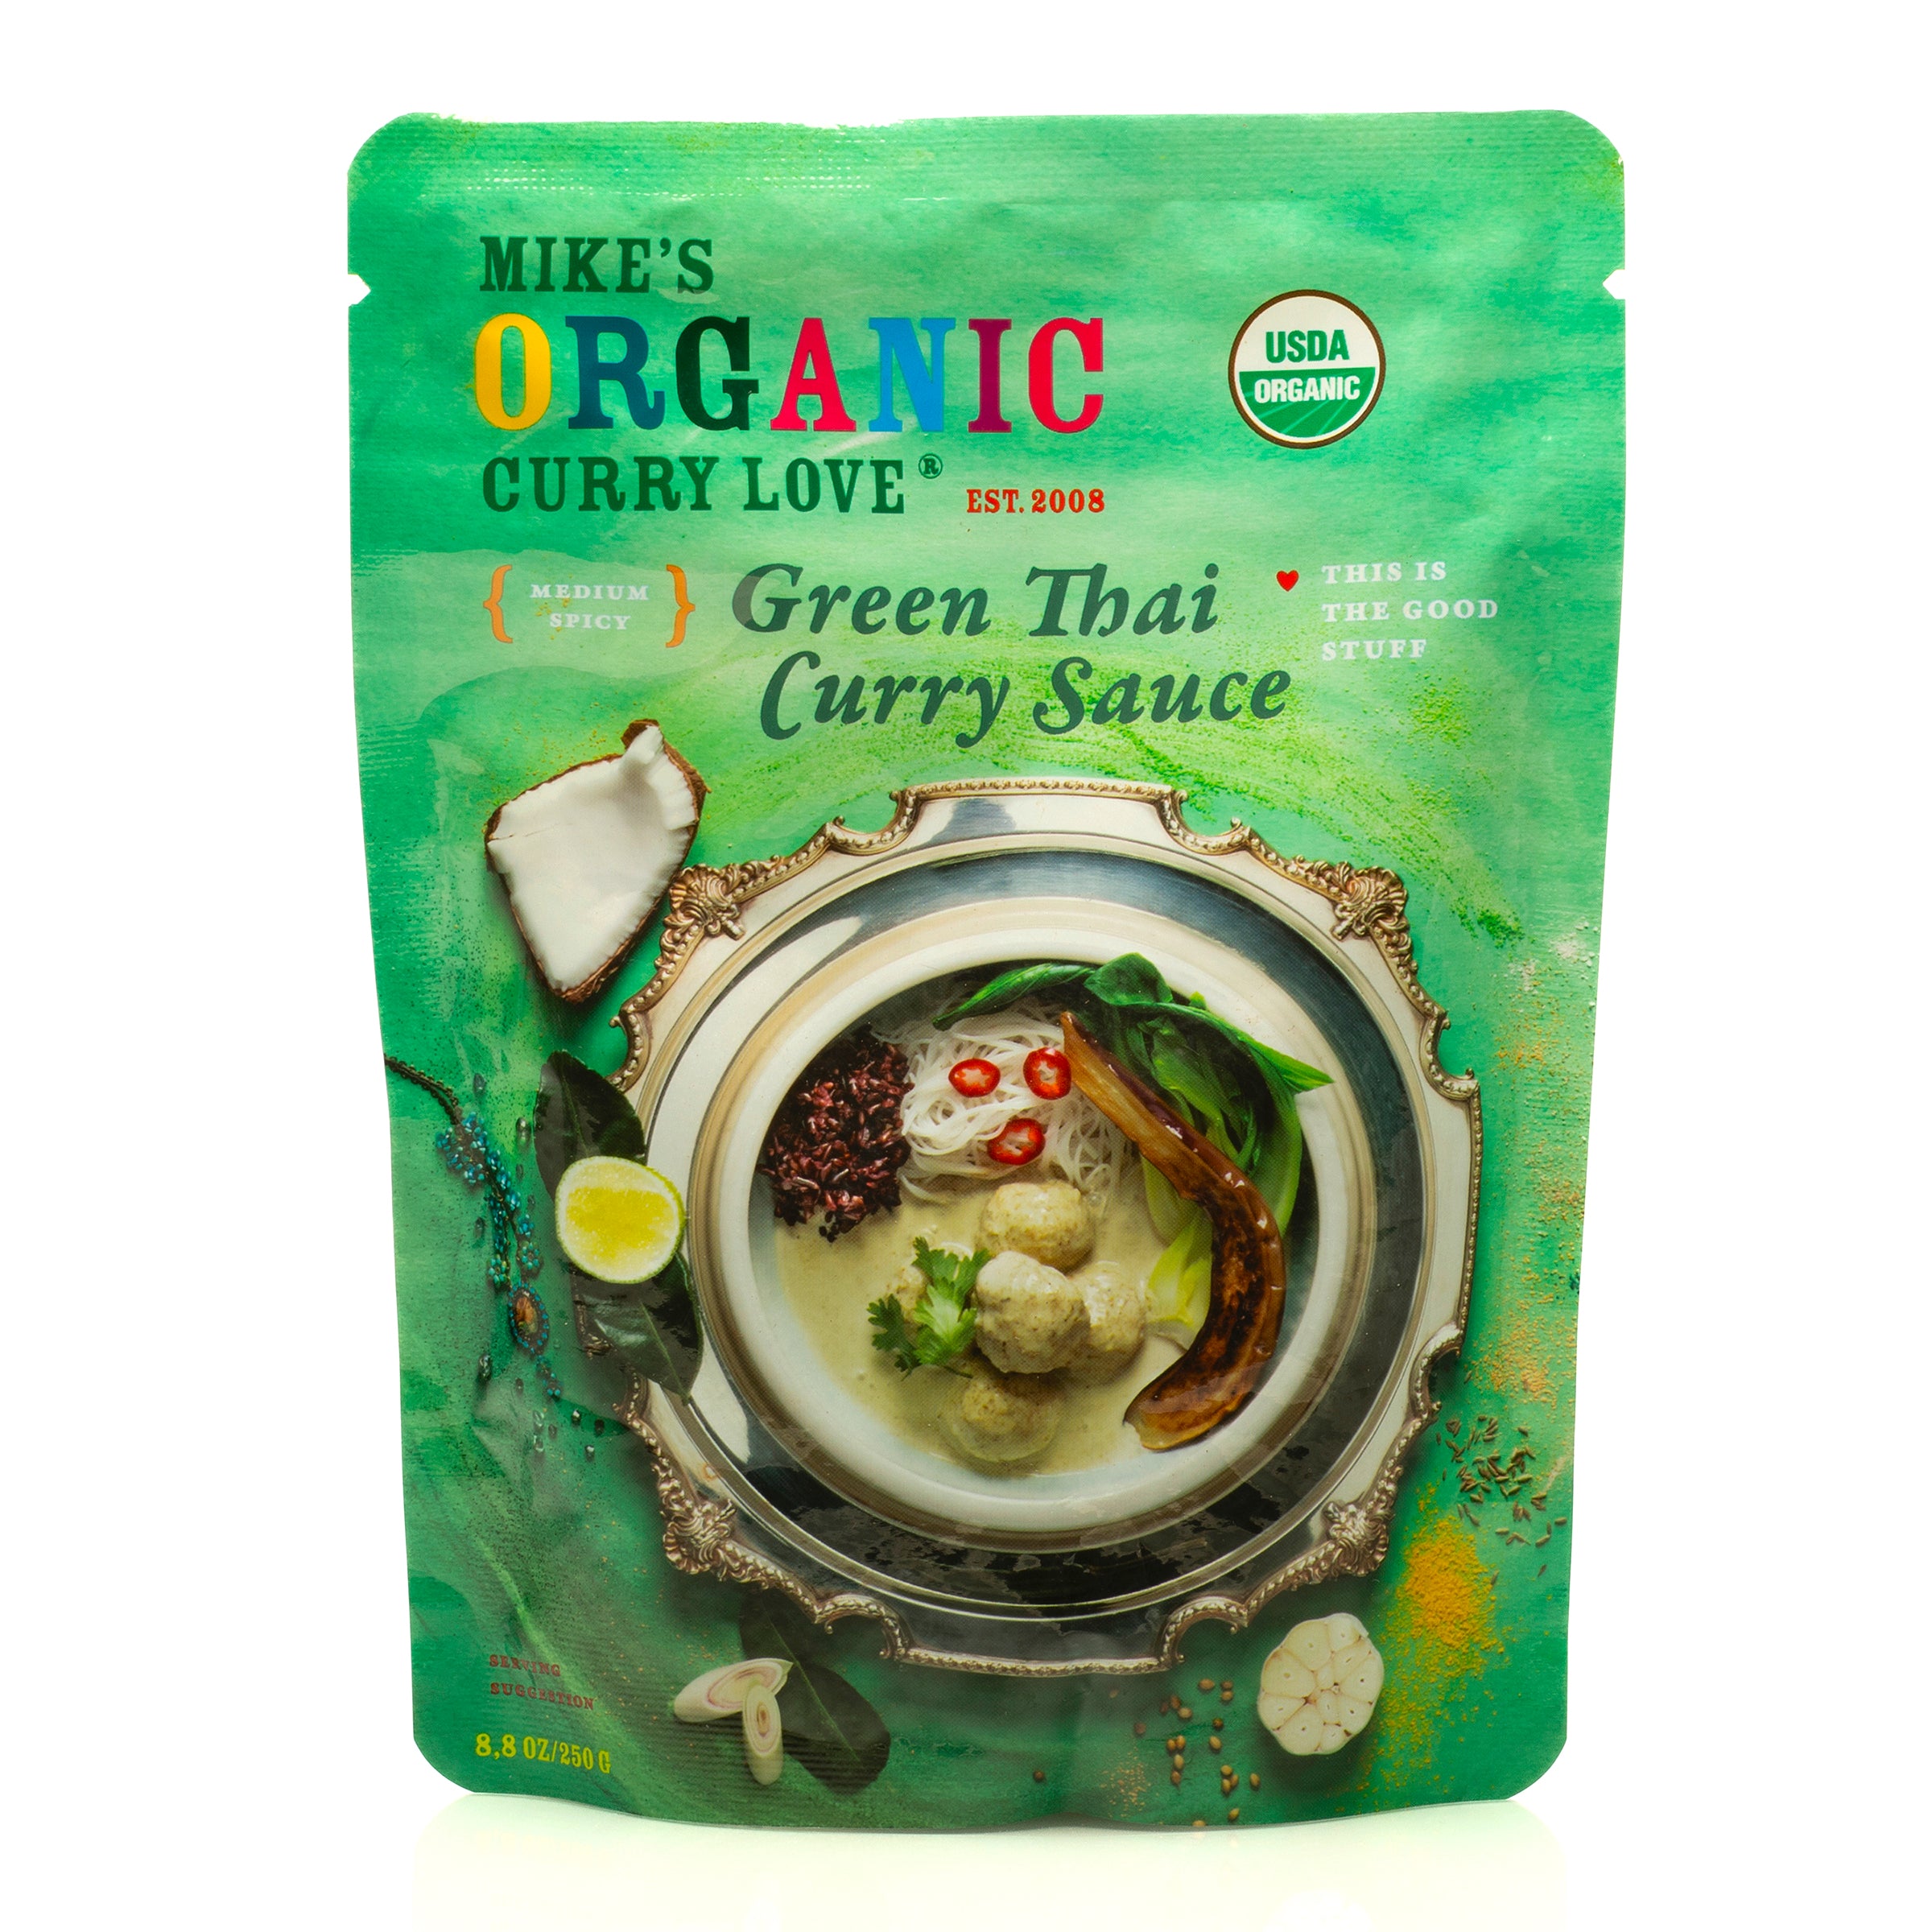 Green Thai Curry Sauce - 1 x 8.8 oz pouch